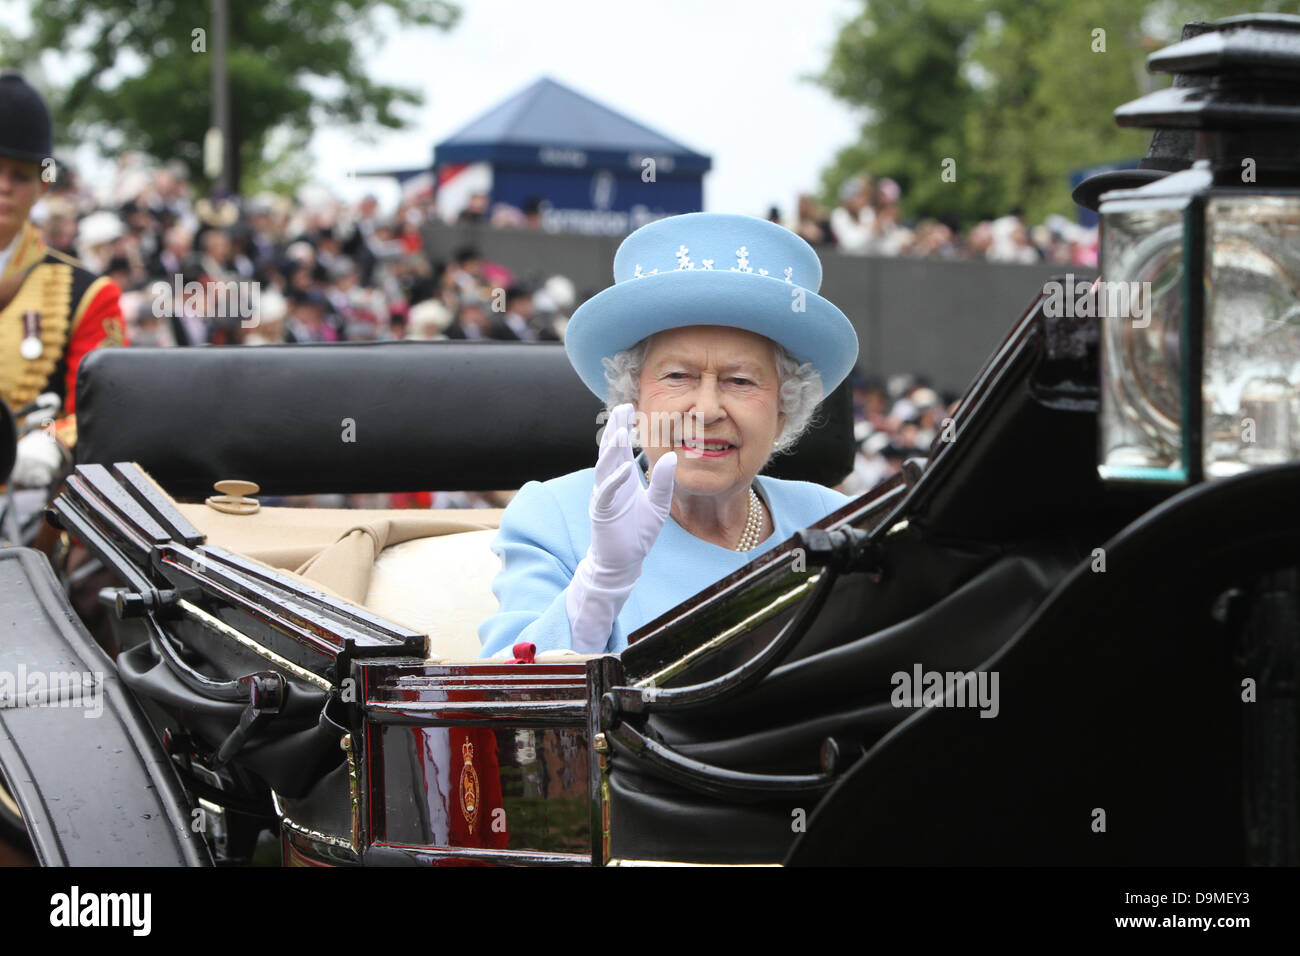 Son Altesse Royale la Reine à Royal Ascot Berkshire Angleterre Juin 2013 Banque D'Images